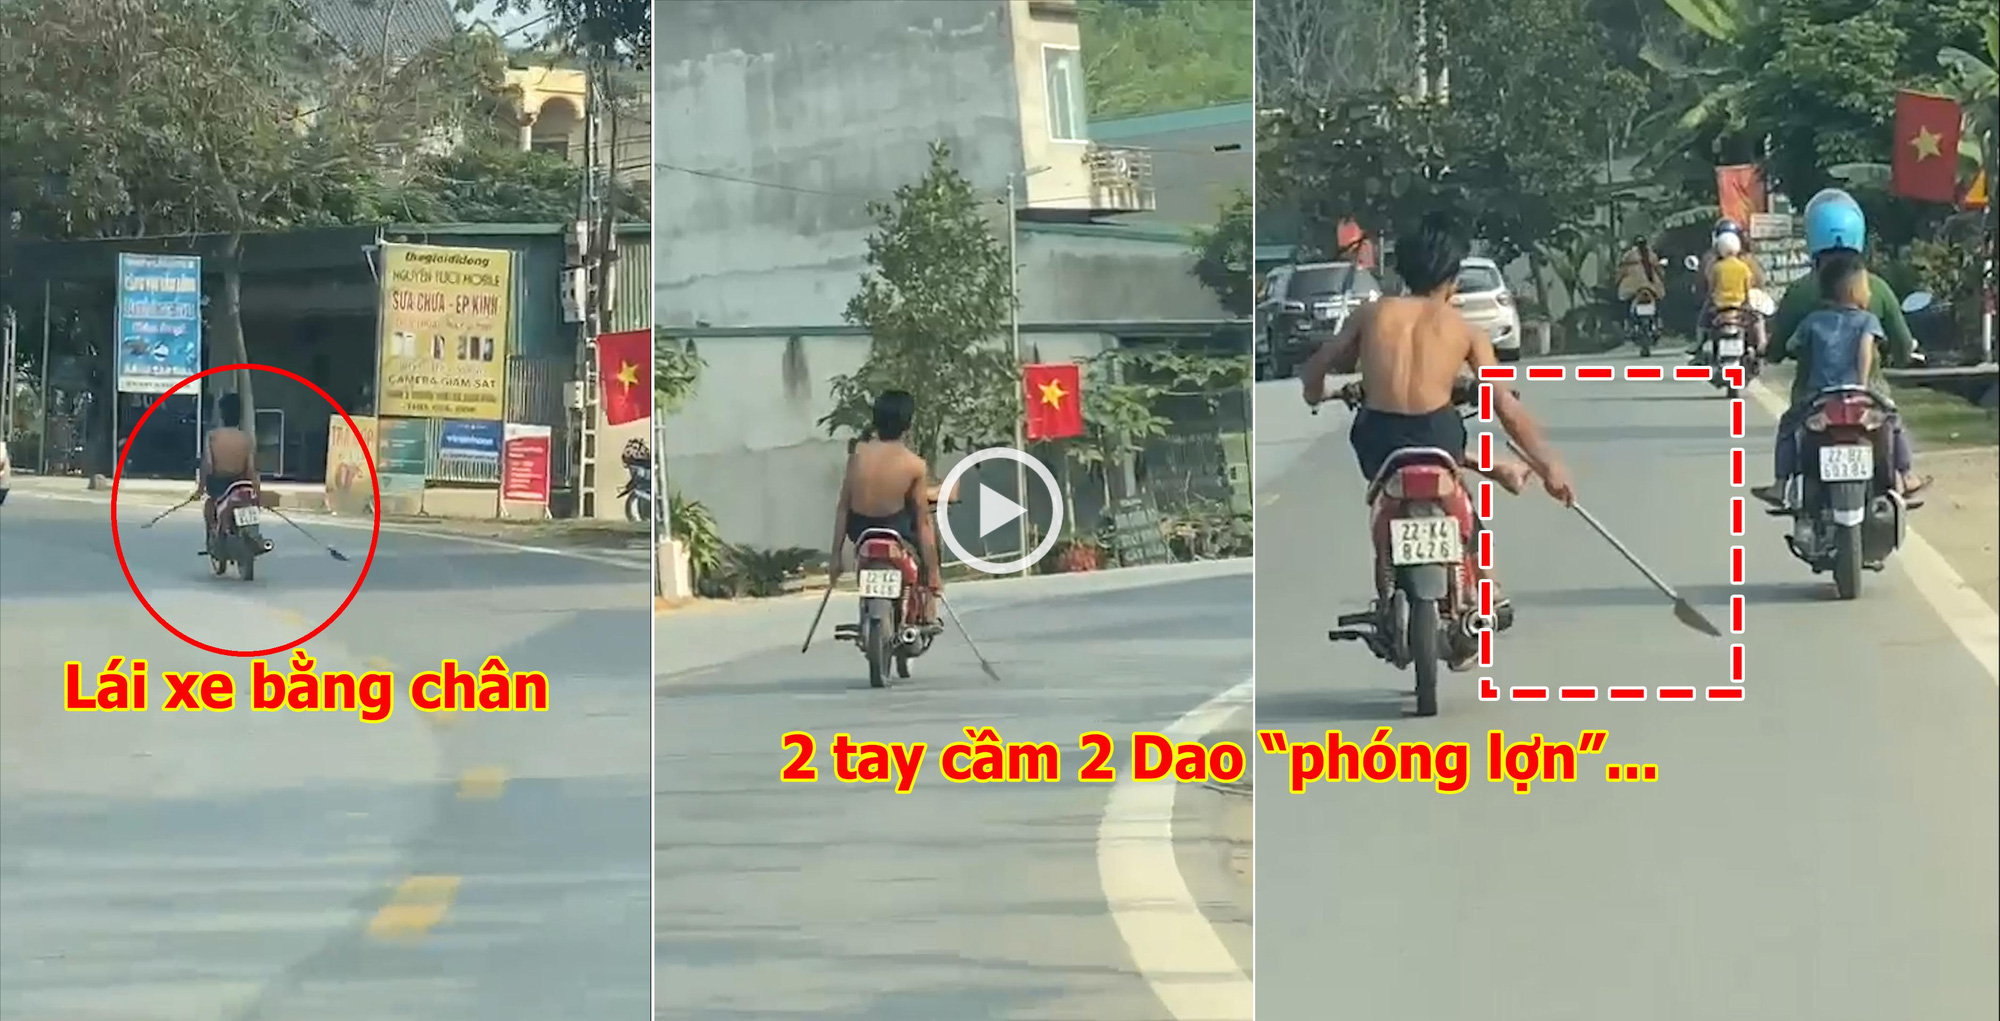 Clip: Nam thanh niên 2 tay cầm  2 dao “phóng lợn”, lái xe máy bằng chân chạy dọc đường quốc lộ - Ảnh 2.